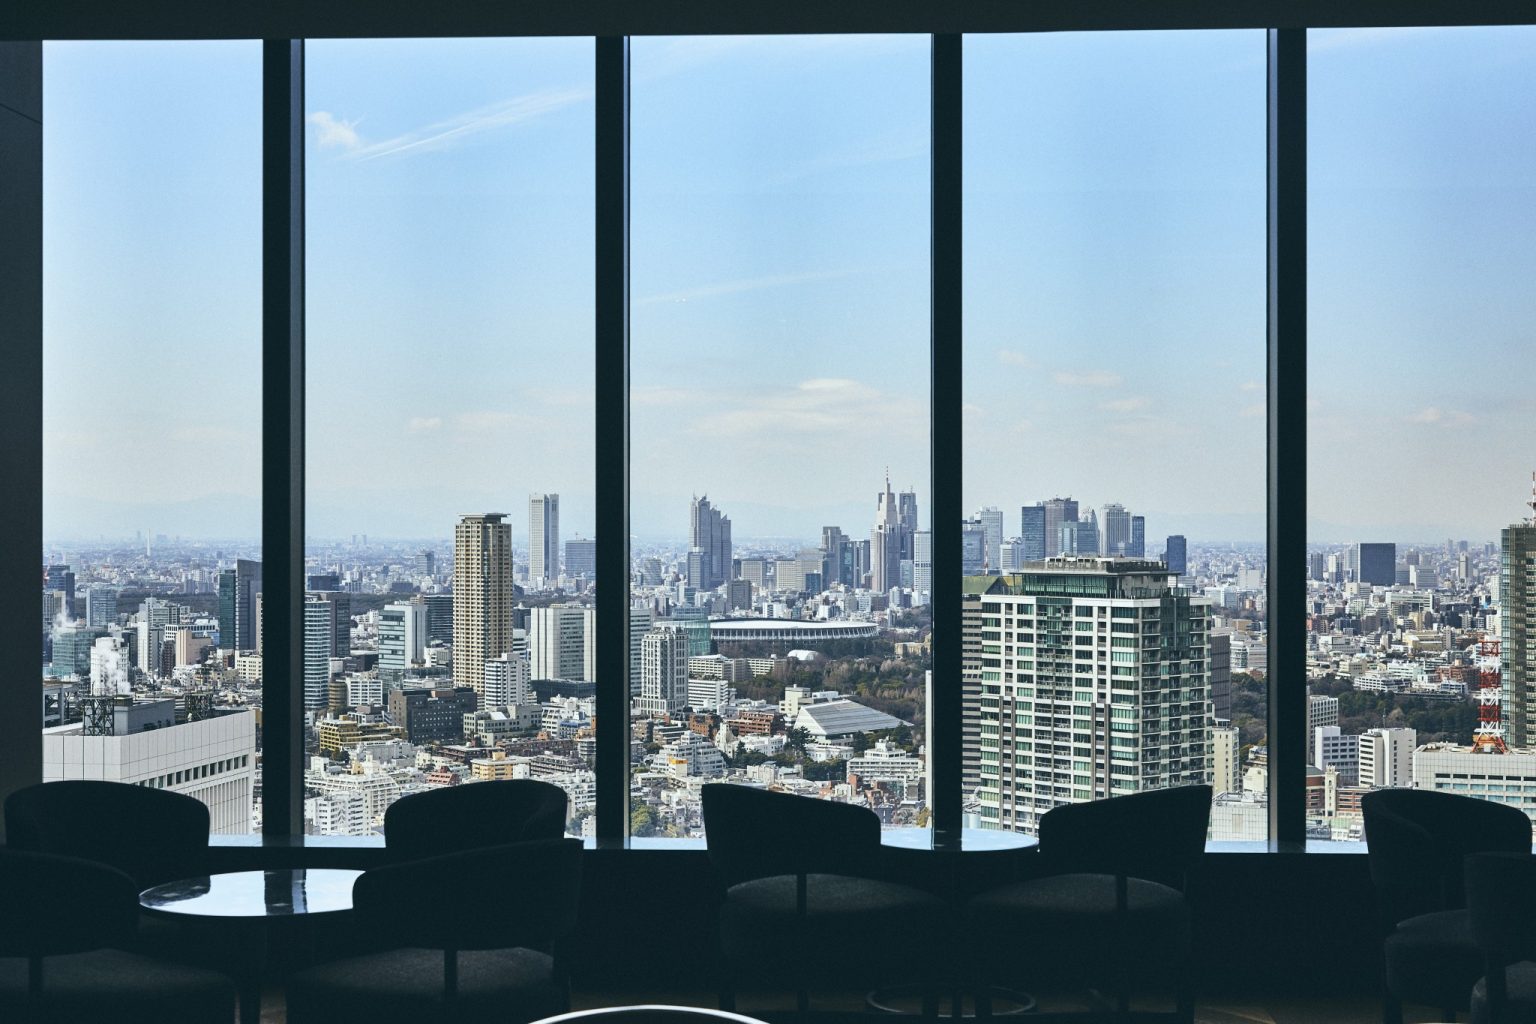 「オークラプレステージタワー」最上階にはバーラウンジ〈スターライト〉が。東京タワーの展望台よりも高い41階からは新国立競技場ほか、東京の大パノラマを望む。昼間はランチやデザートが楽しめる。